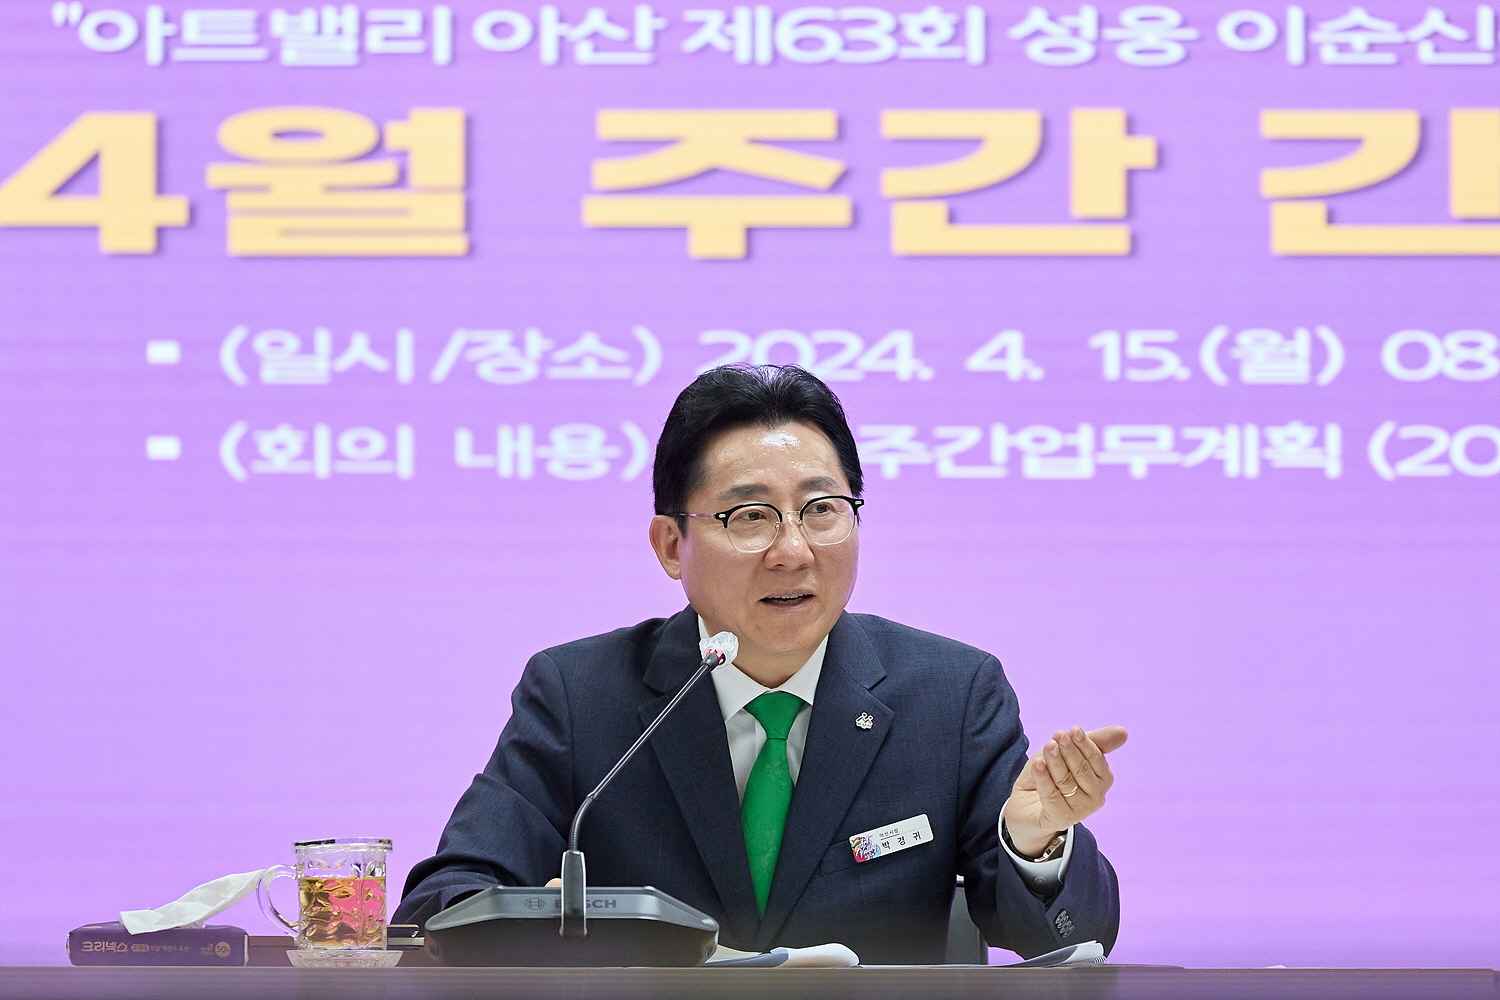 박경귀 아산시장 “이순신 장군을 도박게임에 도용?” 대노 관련사진